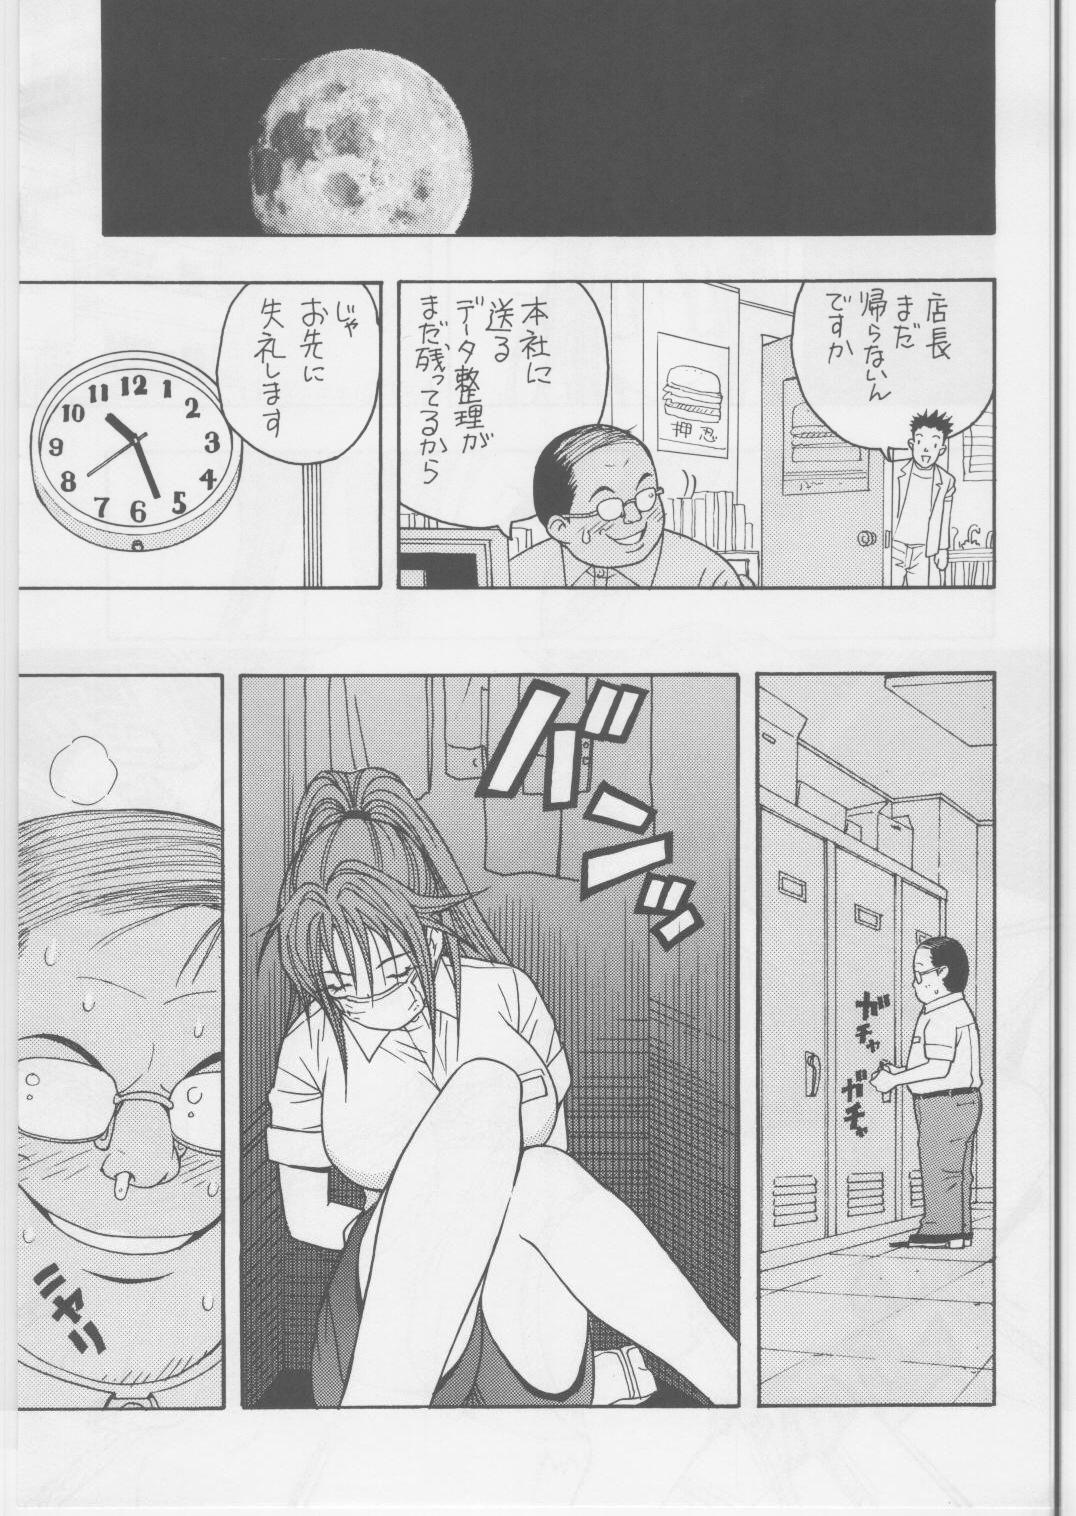 Relax Ichigo DE Pon 2 - Ichigo 100 Stepmother - Page 6